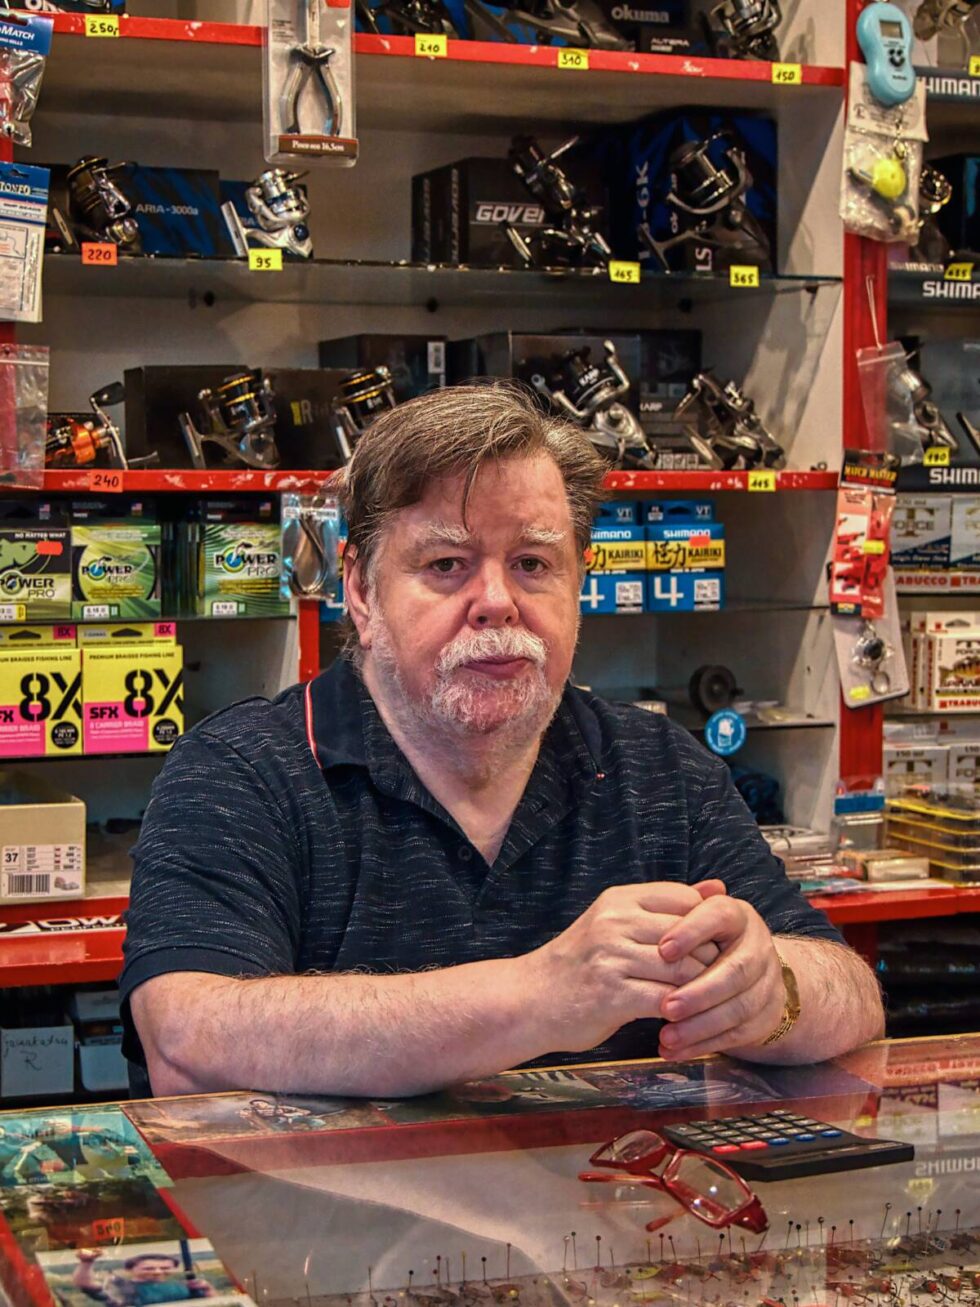 Od 34 lat prowadzi sklep wędkarski. Z trudem radzi sobie z sieciową konkurencją